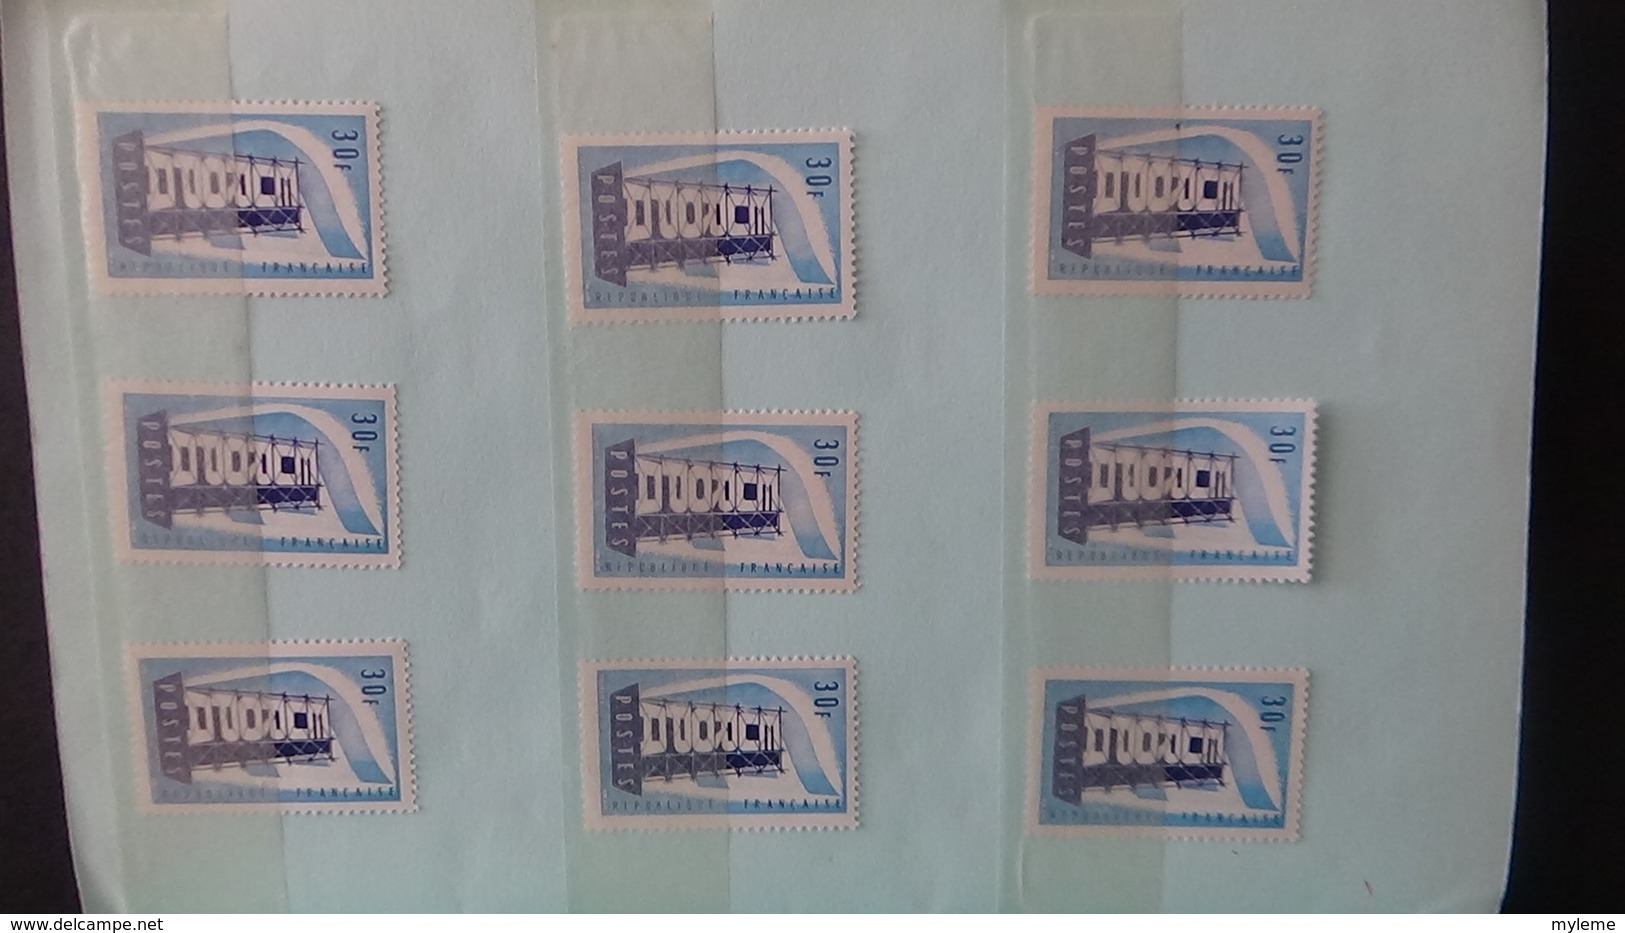 Collection de timbres ** de France dans carnet à choix dont bonnes petites valeurs. Côte ++++Voir commentaires !!!